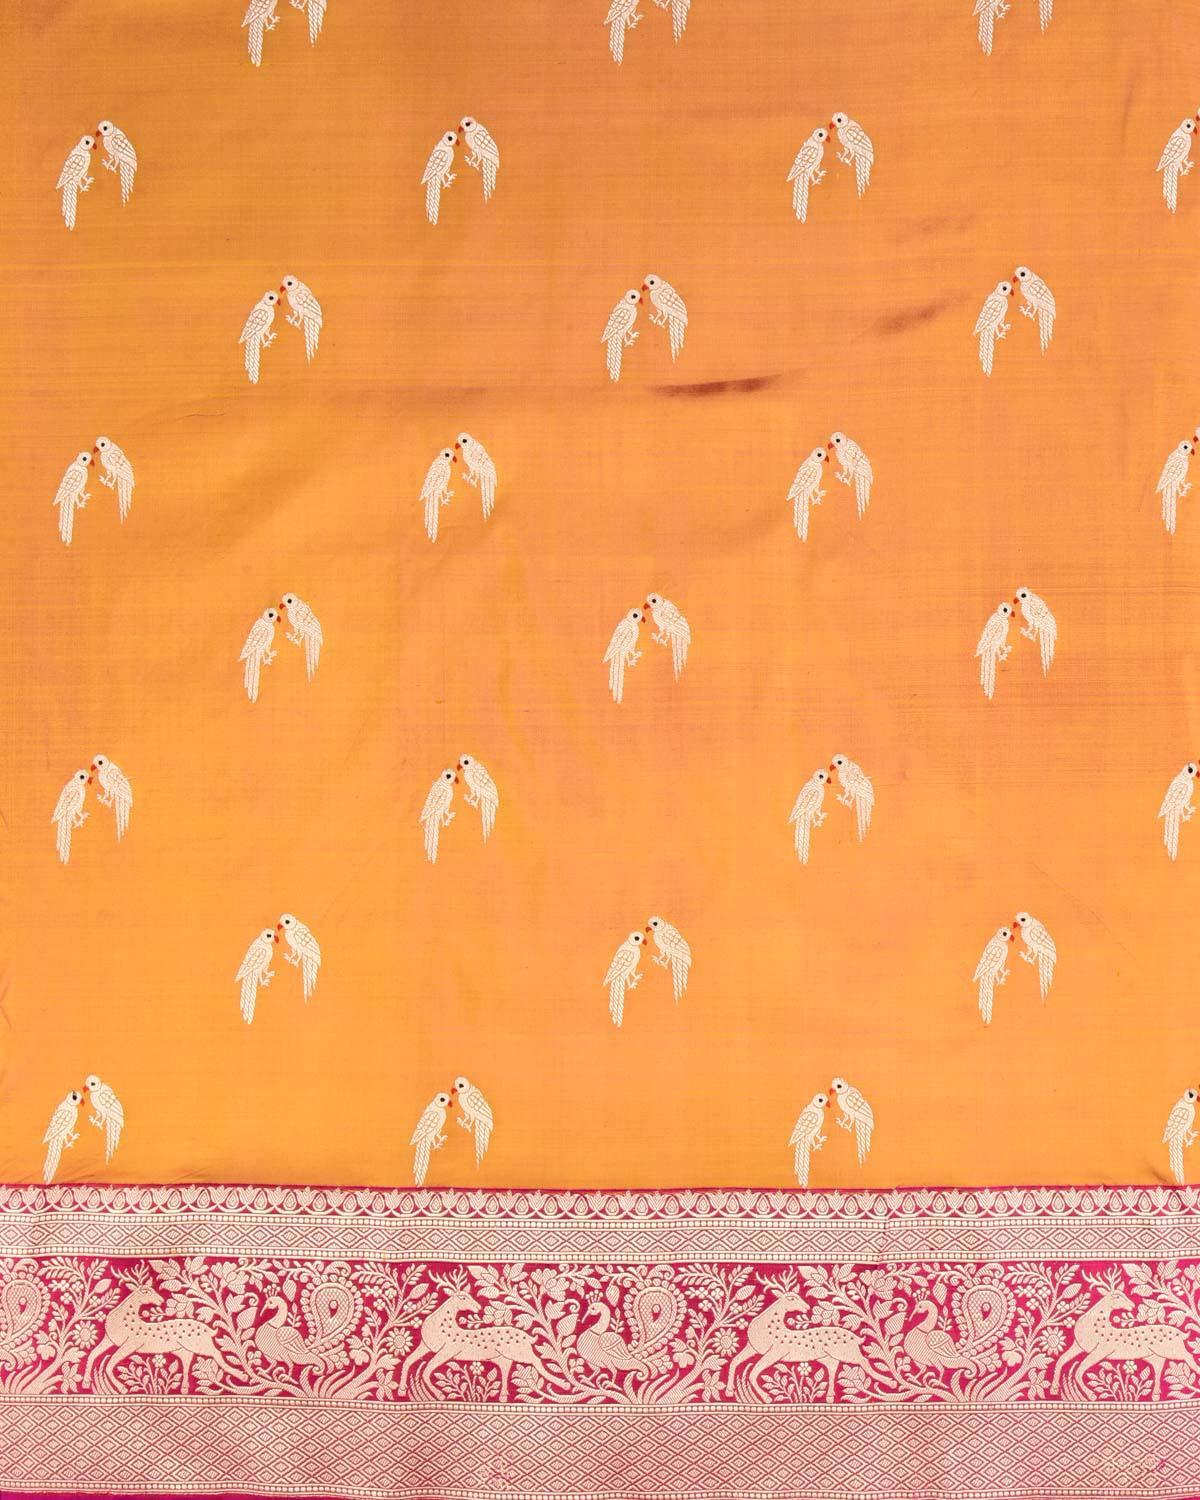 Shot Mustard Yellow Banarasi Love-Birds Kadhuan Brocade Handwoven Katan Silk Saree - By HolyWeaves, Benares